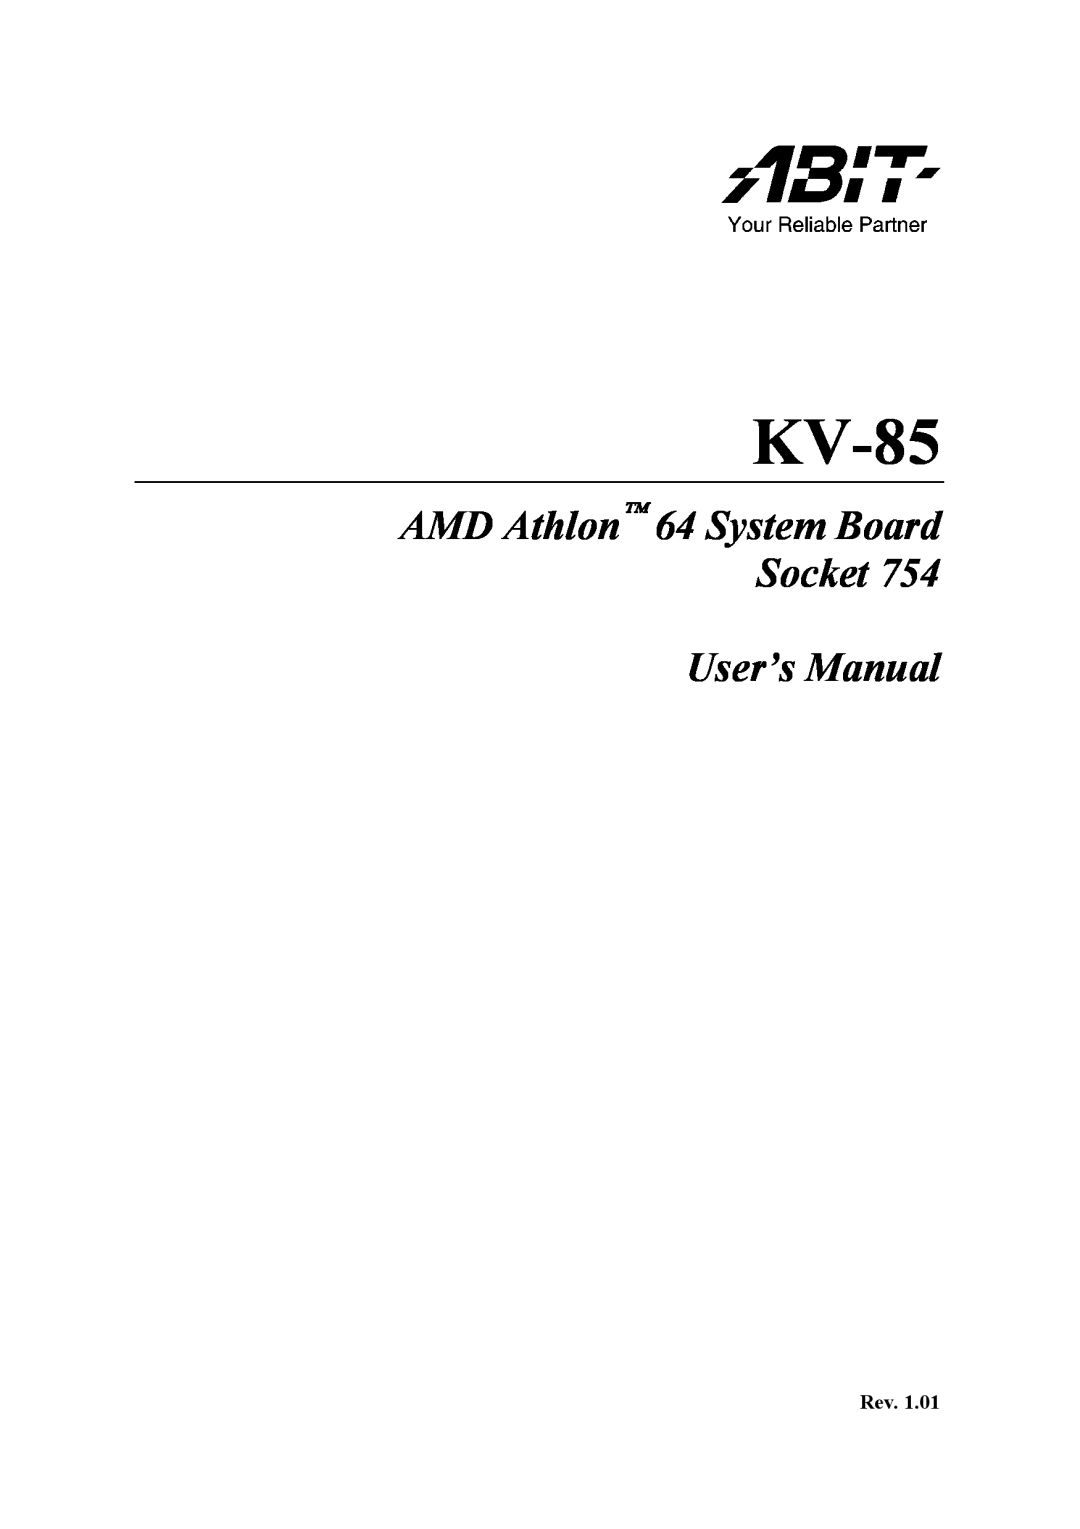 Abit KV-85 user manual AMD Athlon 64 System Board Socket User’s Manual 